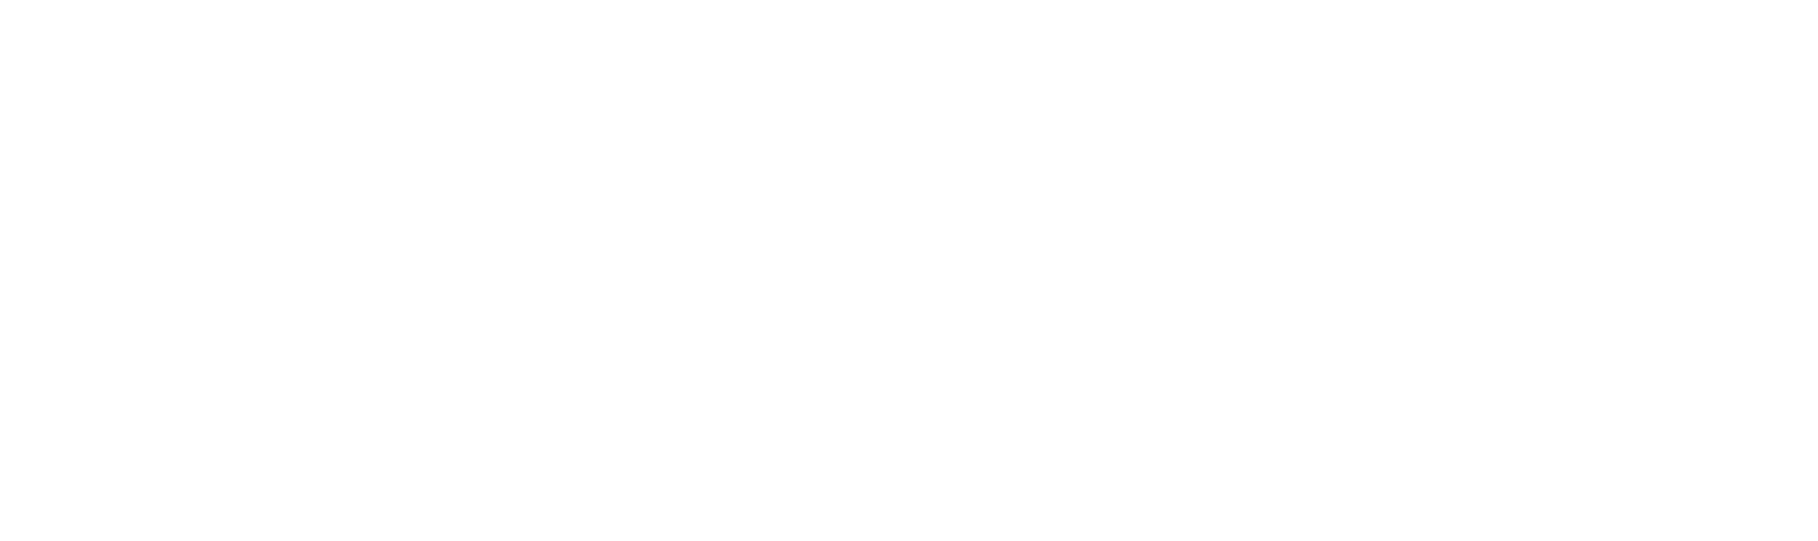 Bell stonebridge logo